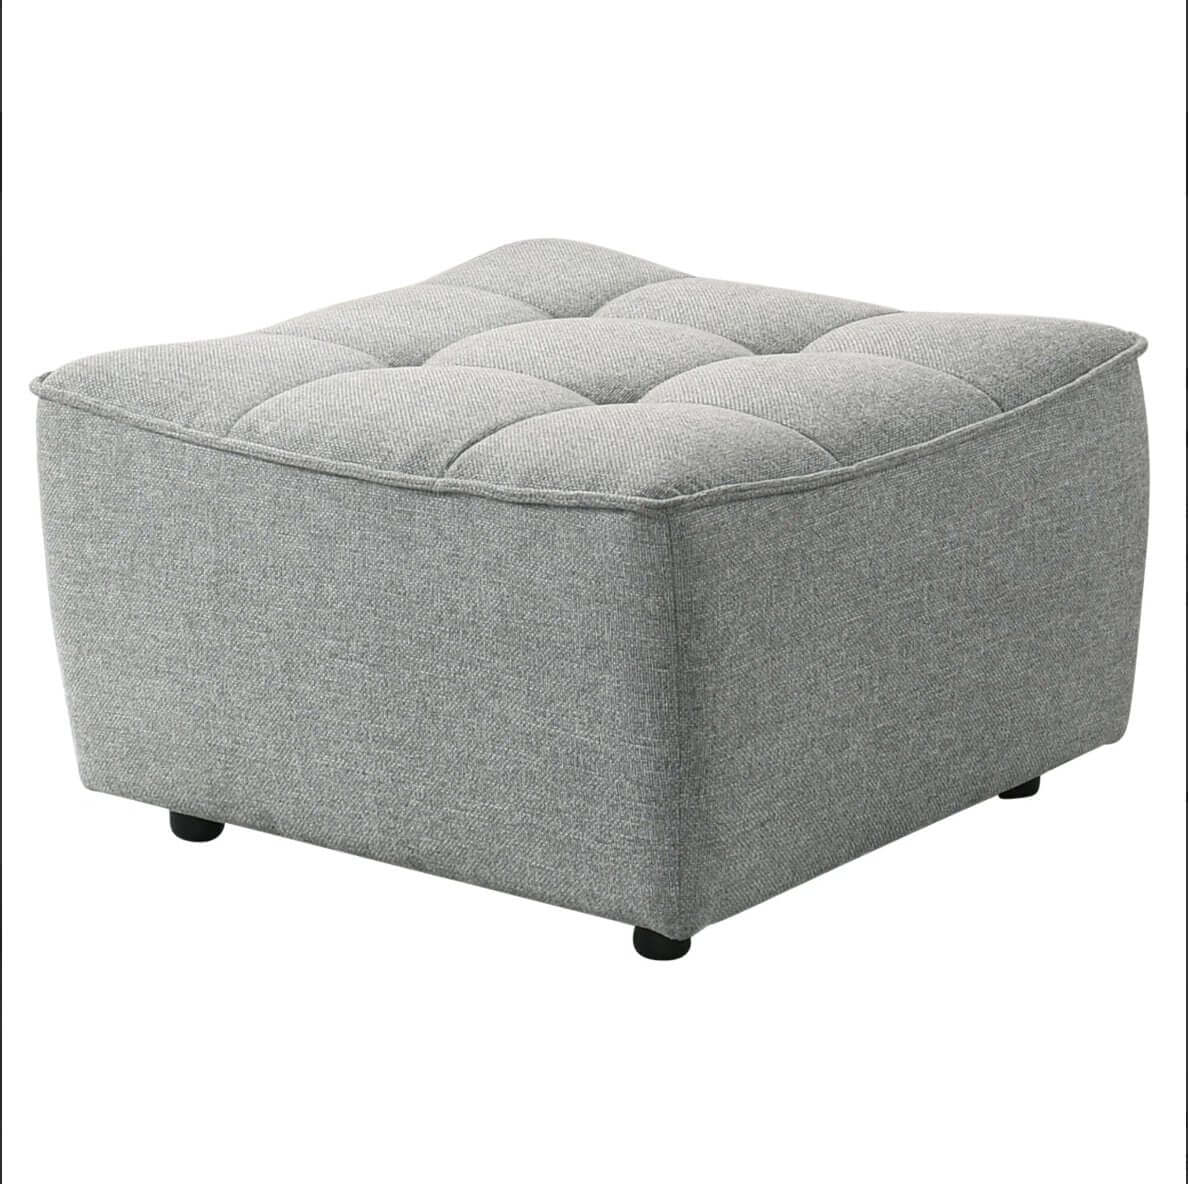 Selen MCM Styled Modular Tufted Corner Sectional Sofa, Linen or Leather 126" - Revel Sofa 